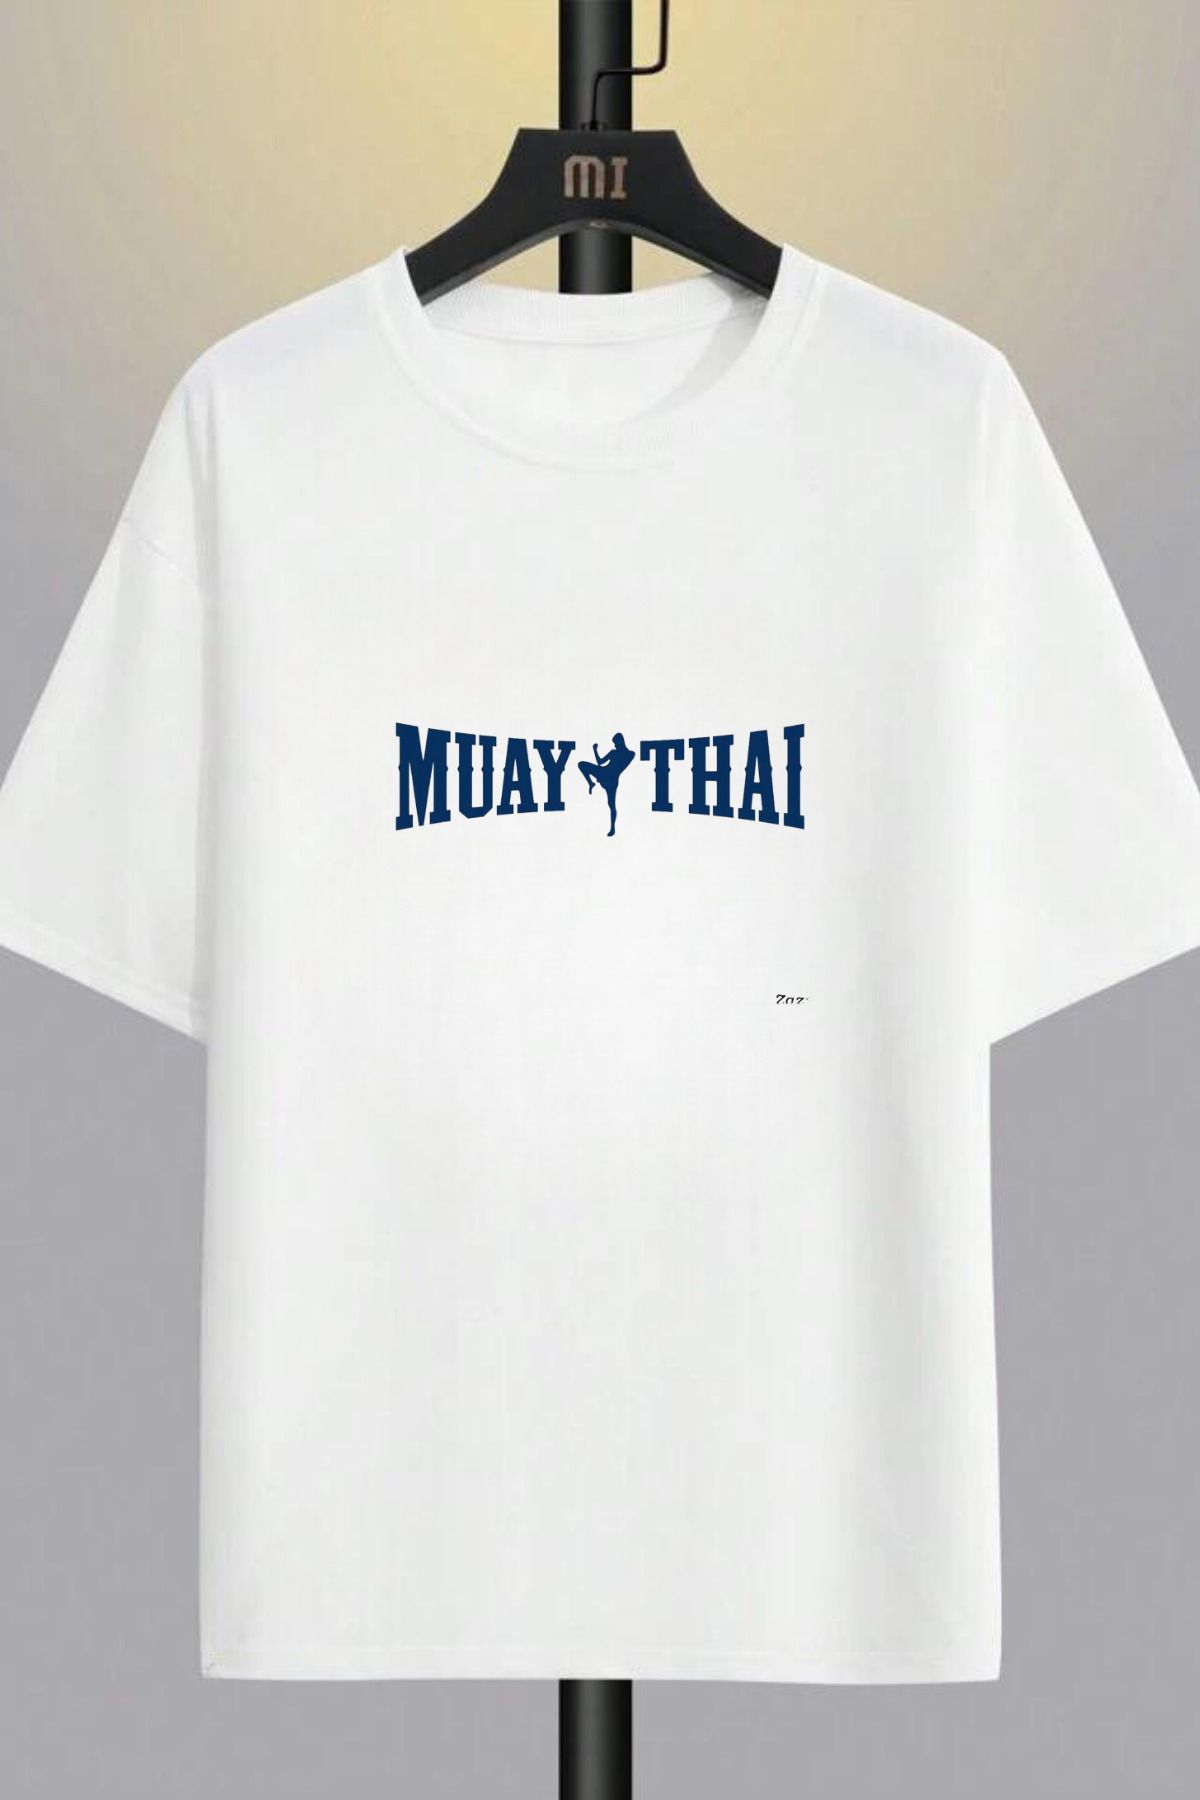 AEMİ Muay Thai Muaythai Kick Boks Boxing Uzak Doğu Sırt Ön Baskılı Oversize Tişört Unisex T-shirt